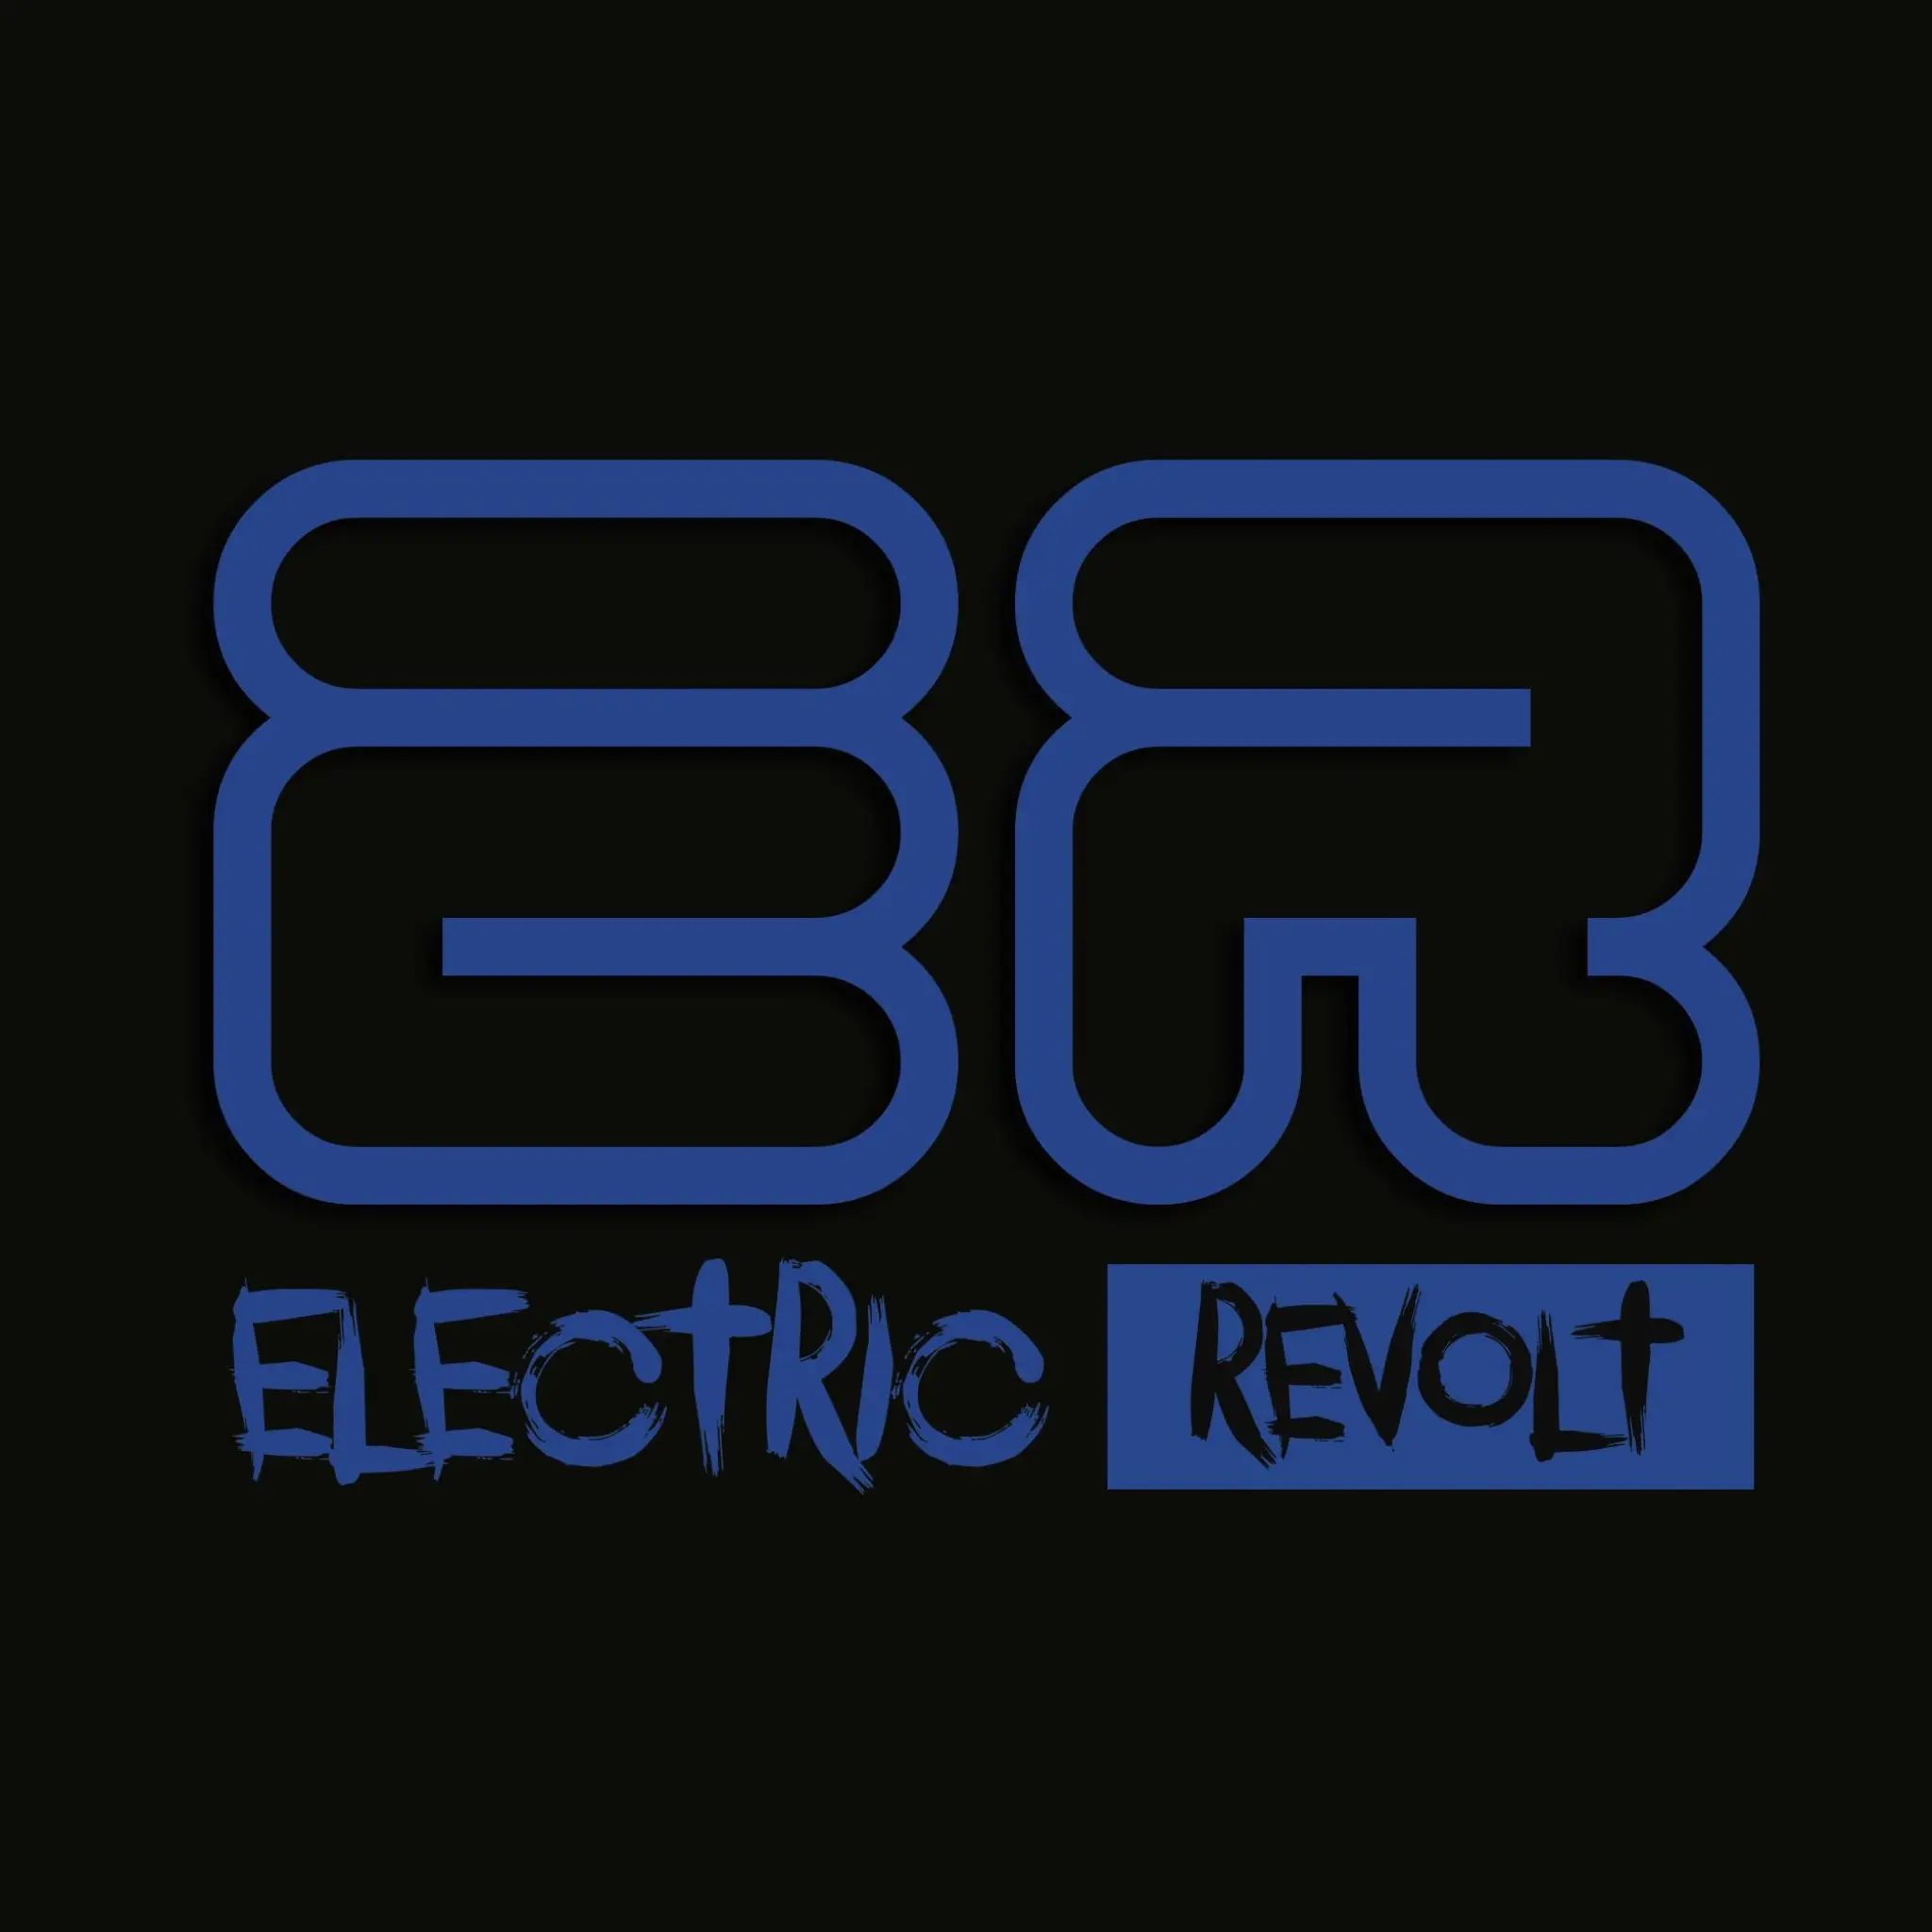 Electric Revolt